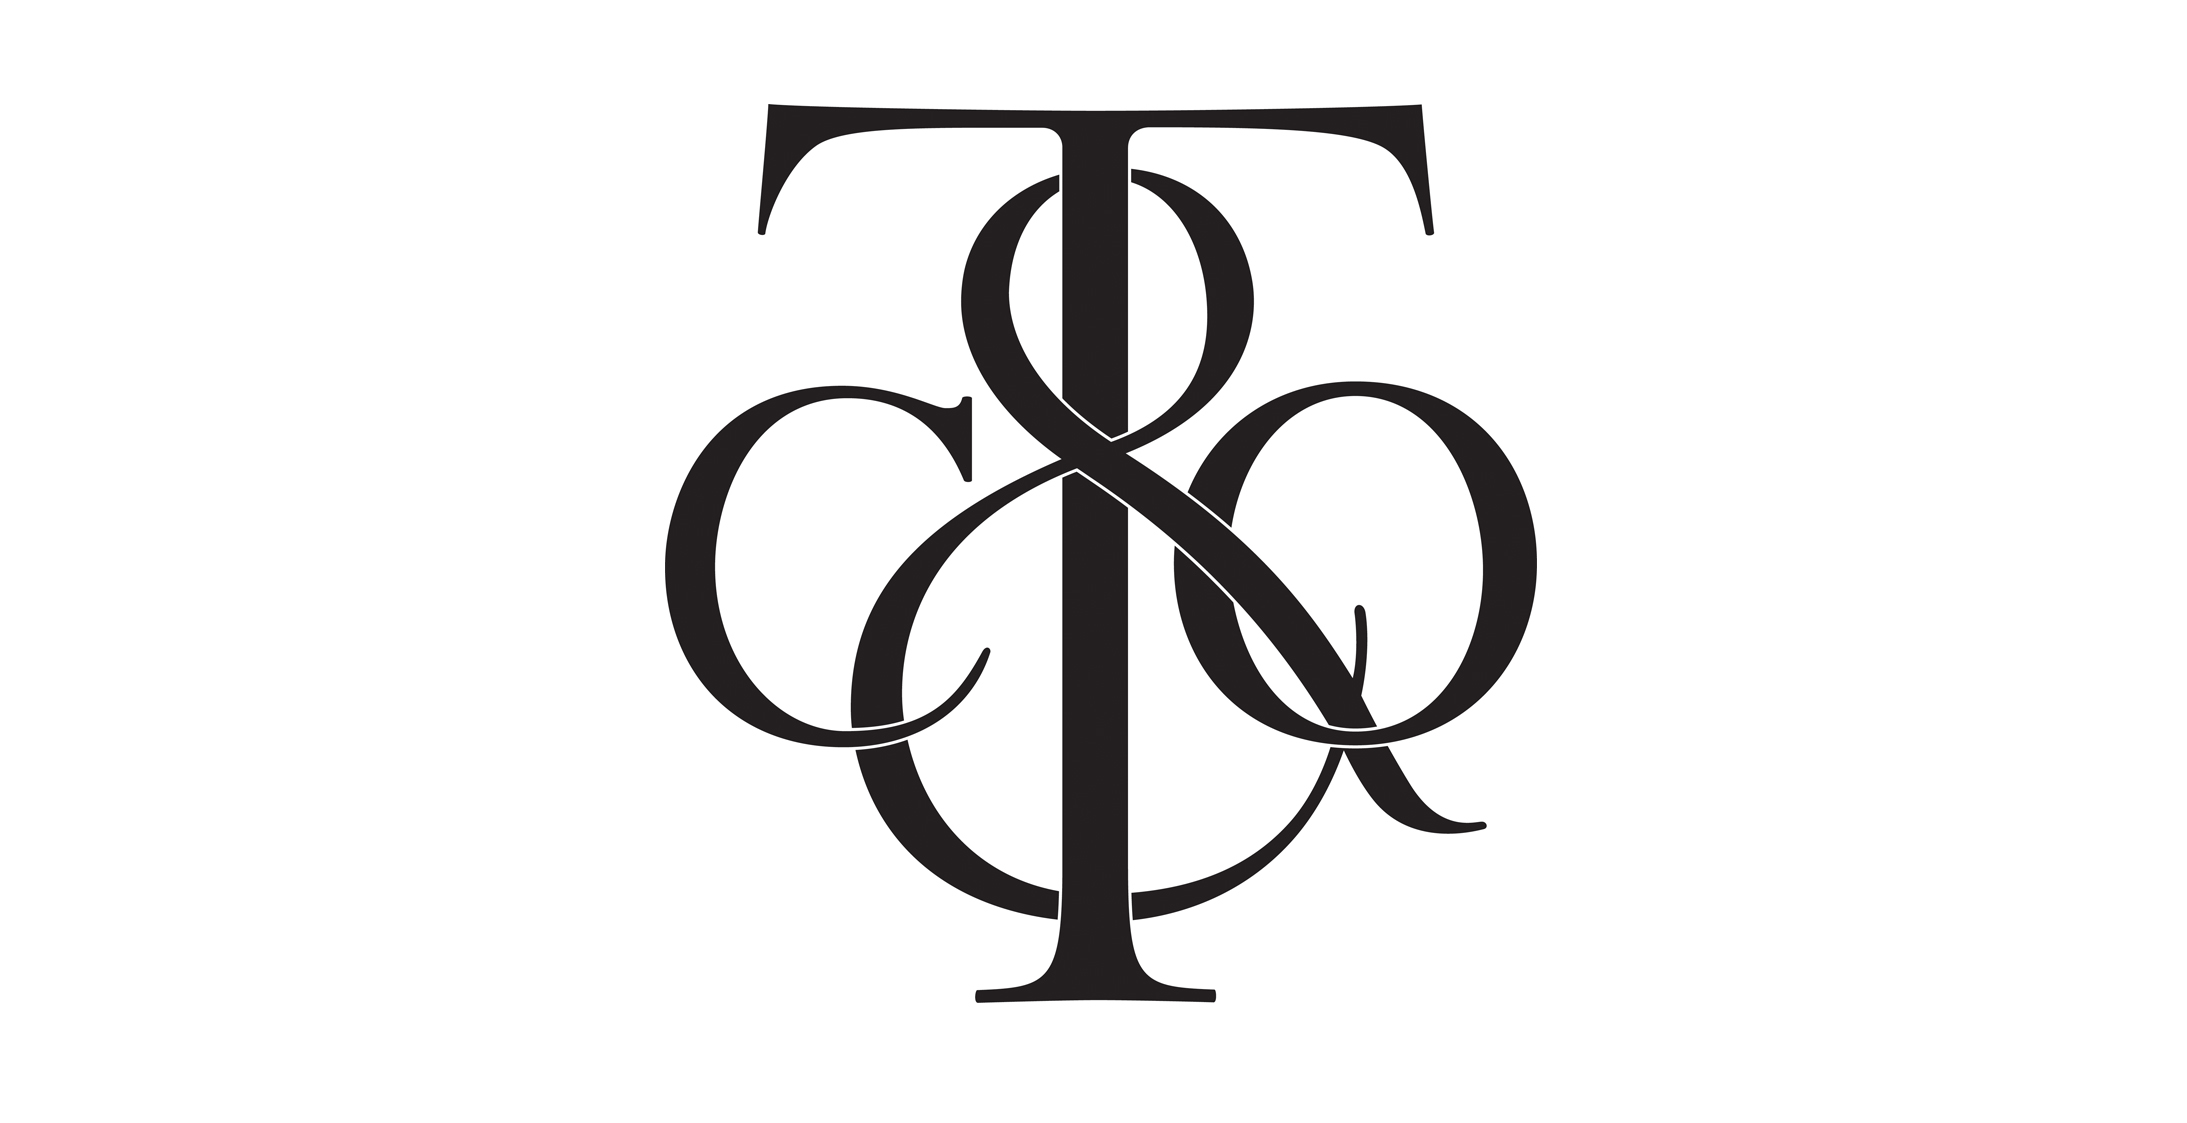 tiffany and co logo